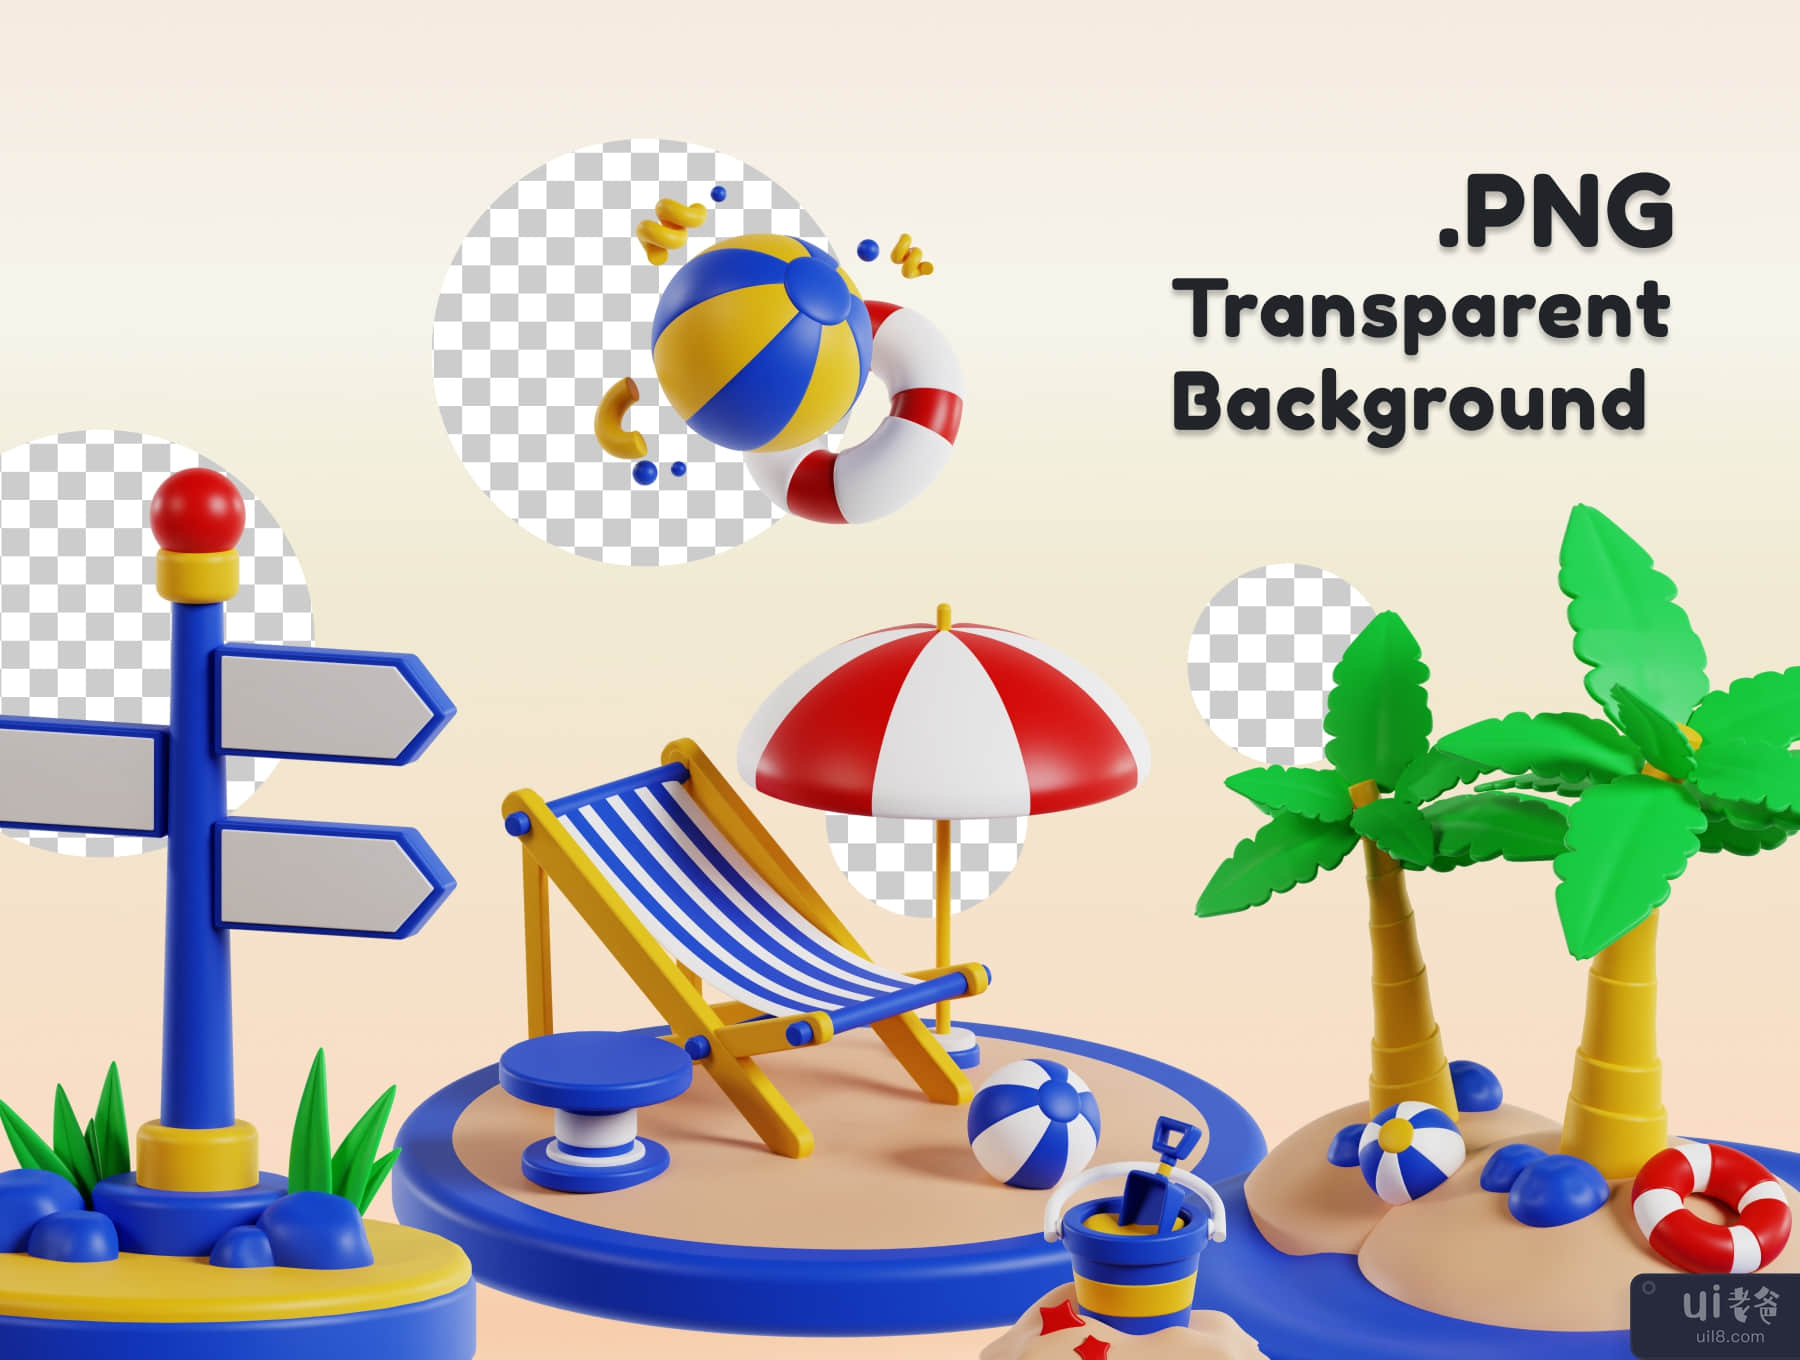 旅行和假日 3D 图标包 (Travel and Holiday 3D Icon Pack)插图3